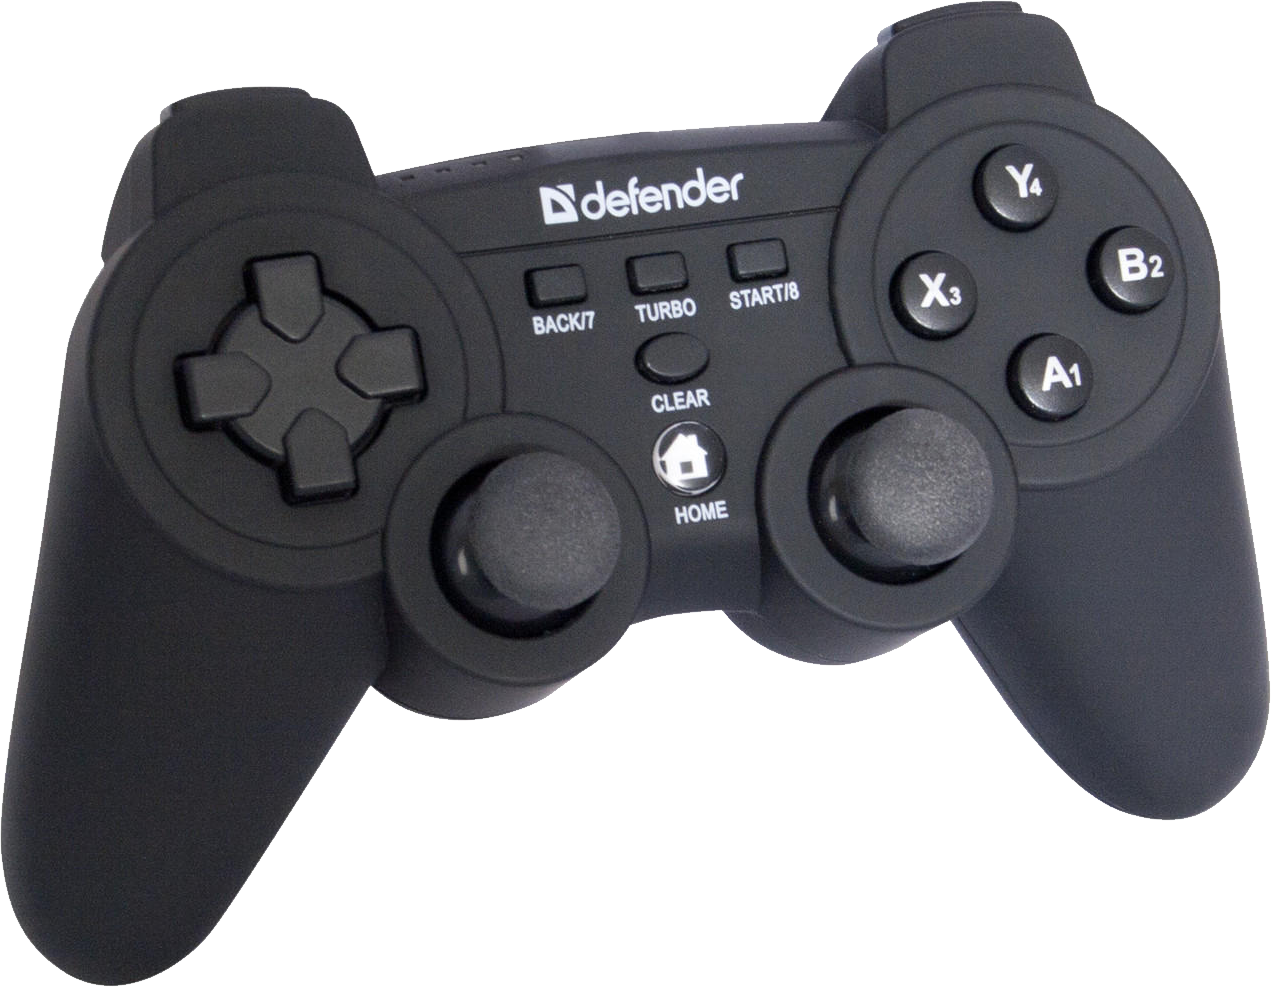 Defender Game Controller Black PNG image